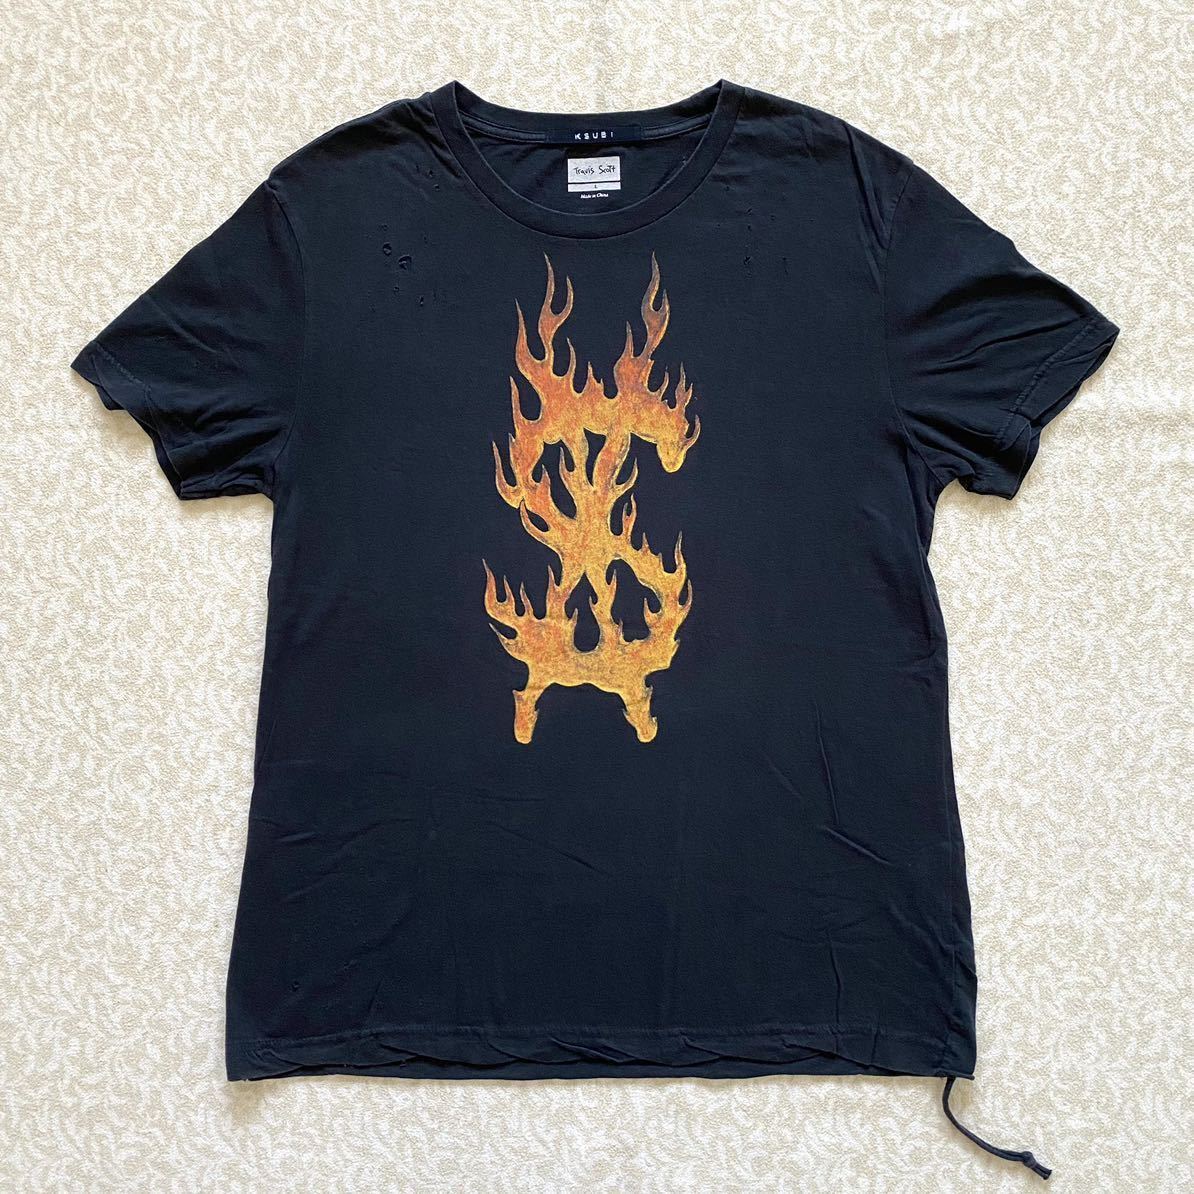 Yahoo!オークション -「travis scott tシャツ」(Lサイズ) (半袖)の落札